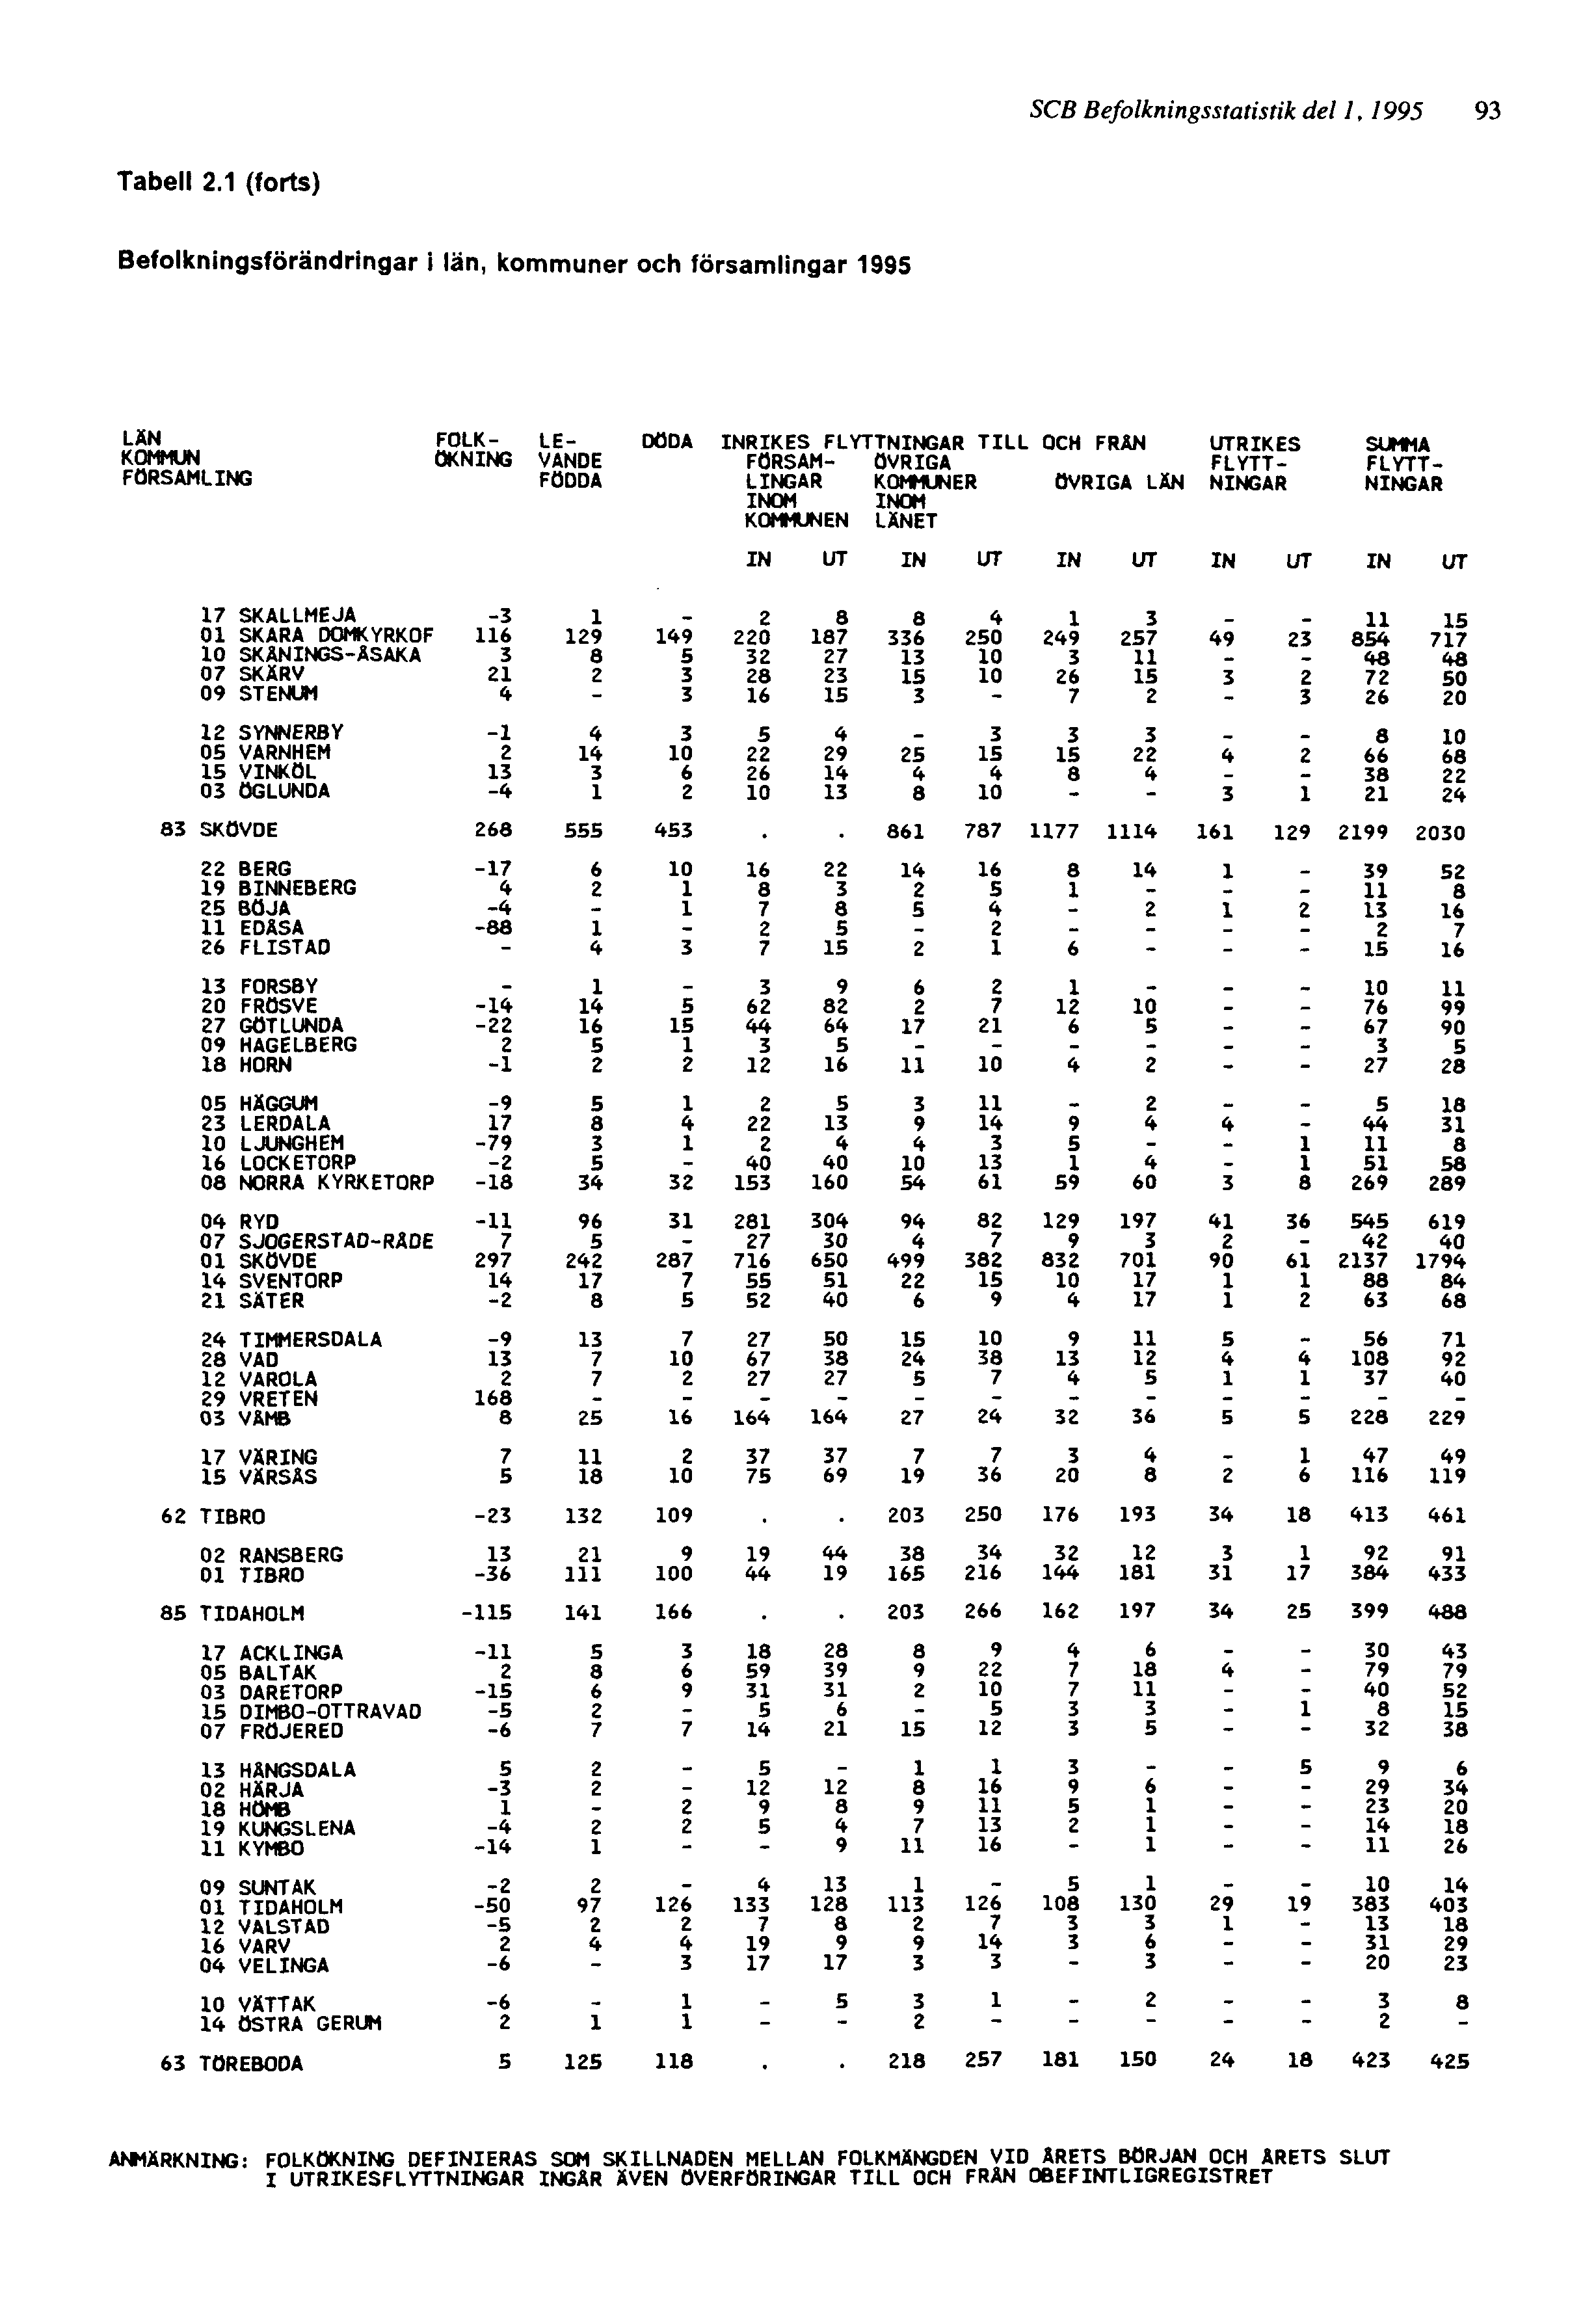 SCB Befolkningsstatistik del 1, 1995 93 ANMÄRKNING: FOLKÖKNING DEFINIERAS SOM SKILLNADEN MELLAN FOLKMÄNGDEN